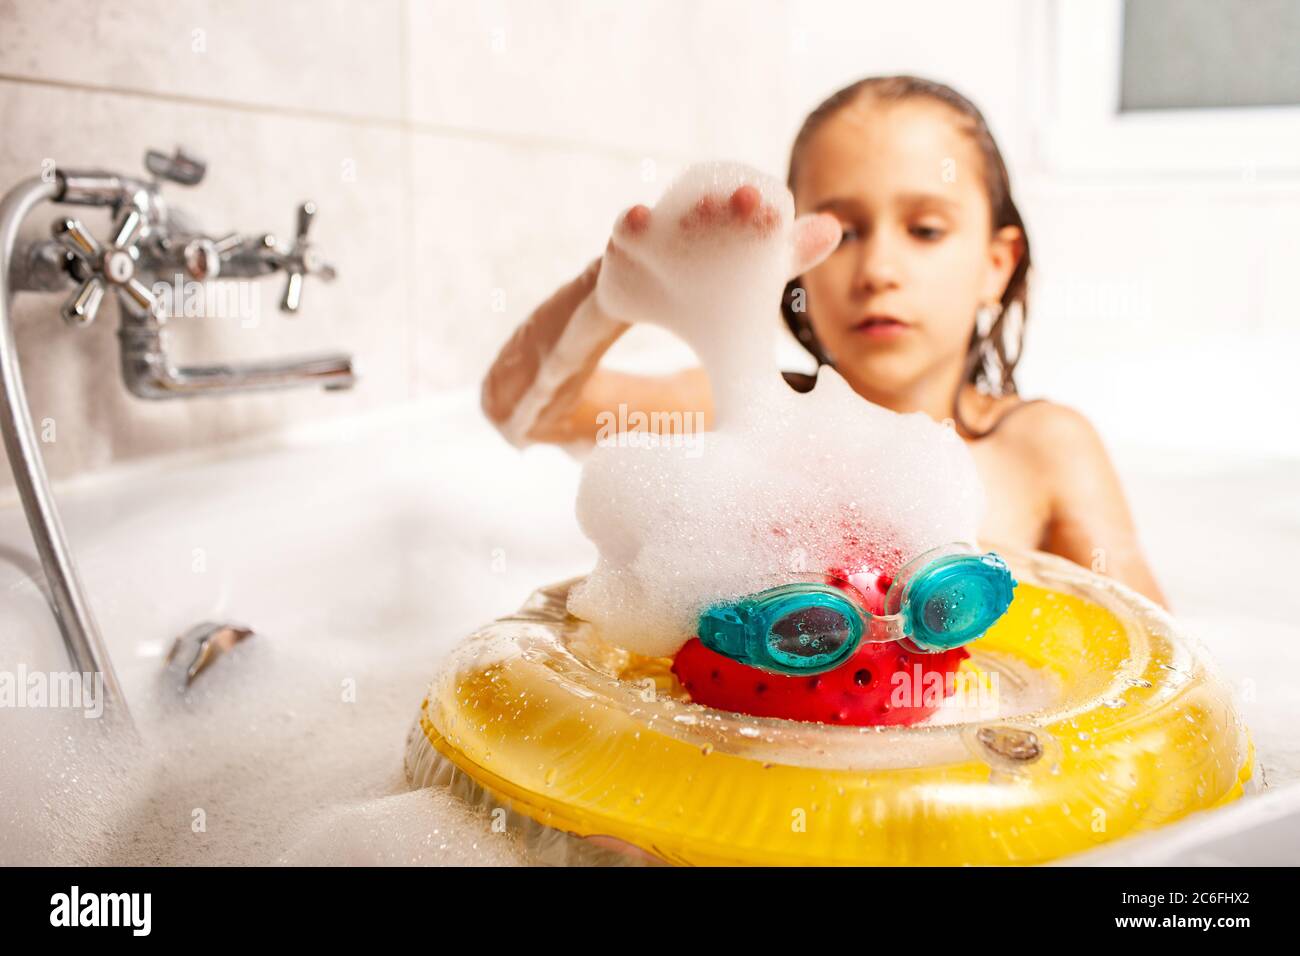 Дочка мылась в душе. Девочка маленькая купается в ванной. Девочка с игрушками моется в ванной. Девочка моется в ванной с игрушками с игрушками. Девочка играется в ванной.